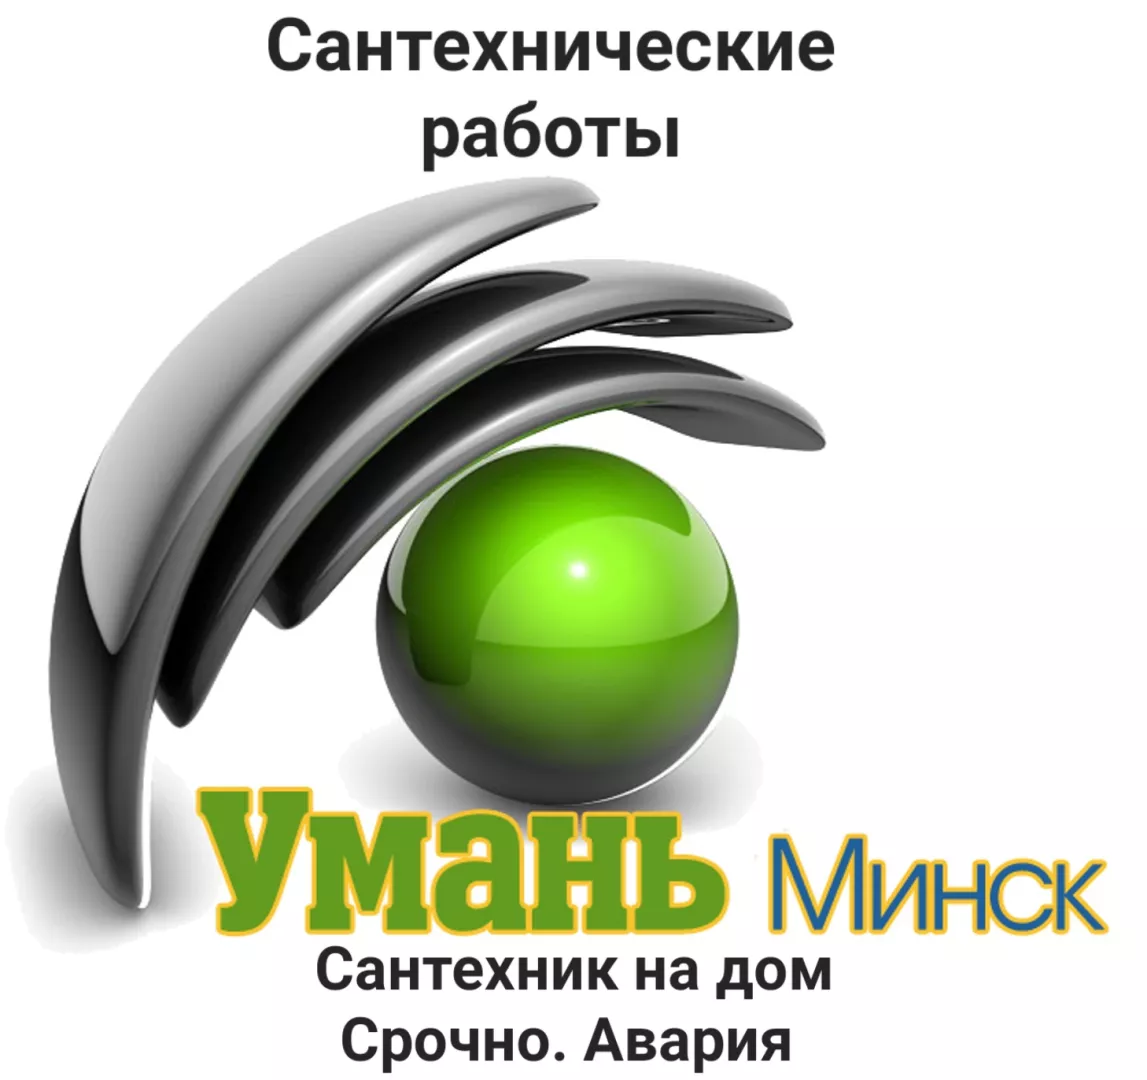 Услуги сантехника, сантехник на дом в Минске